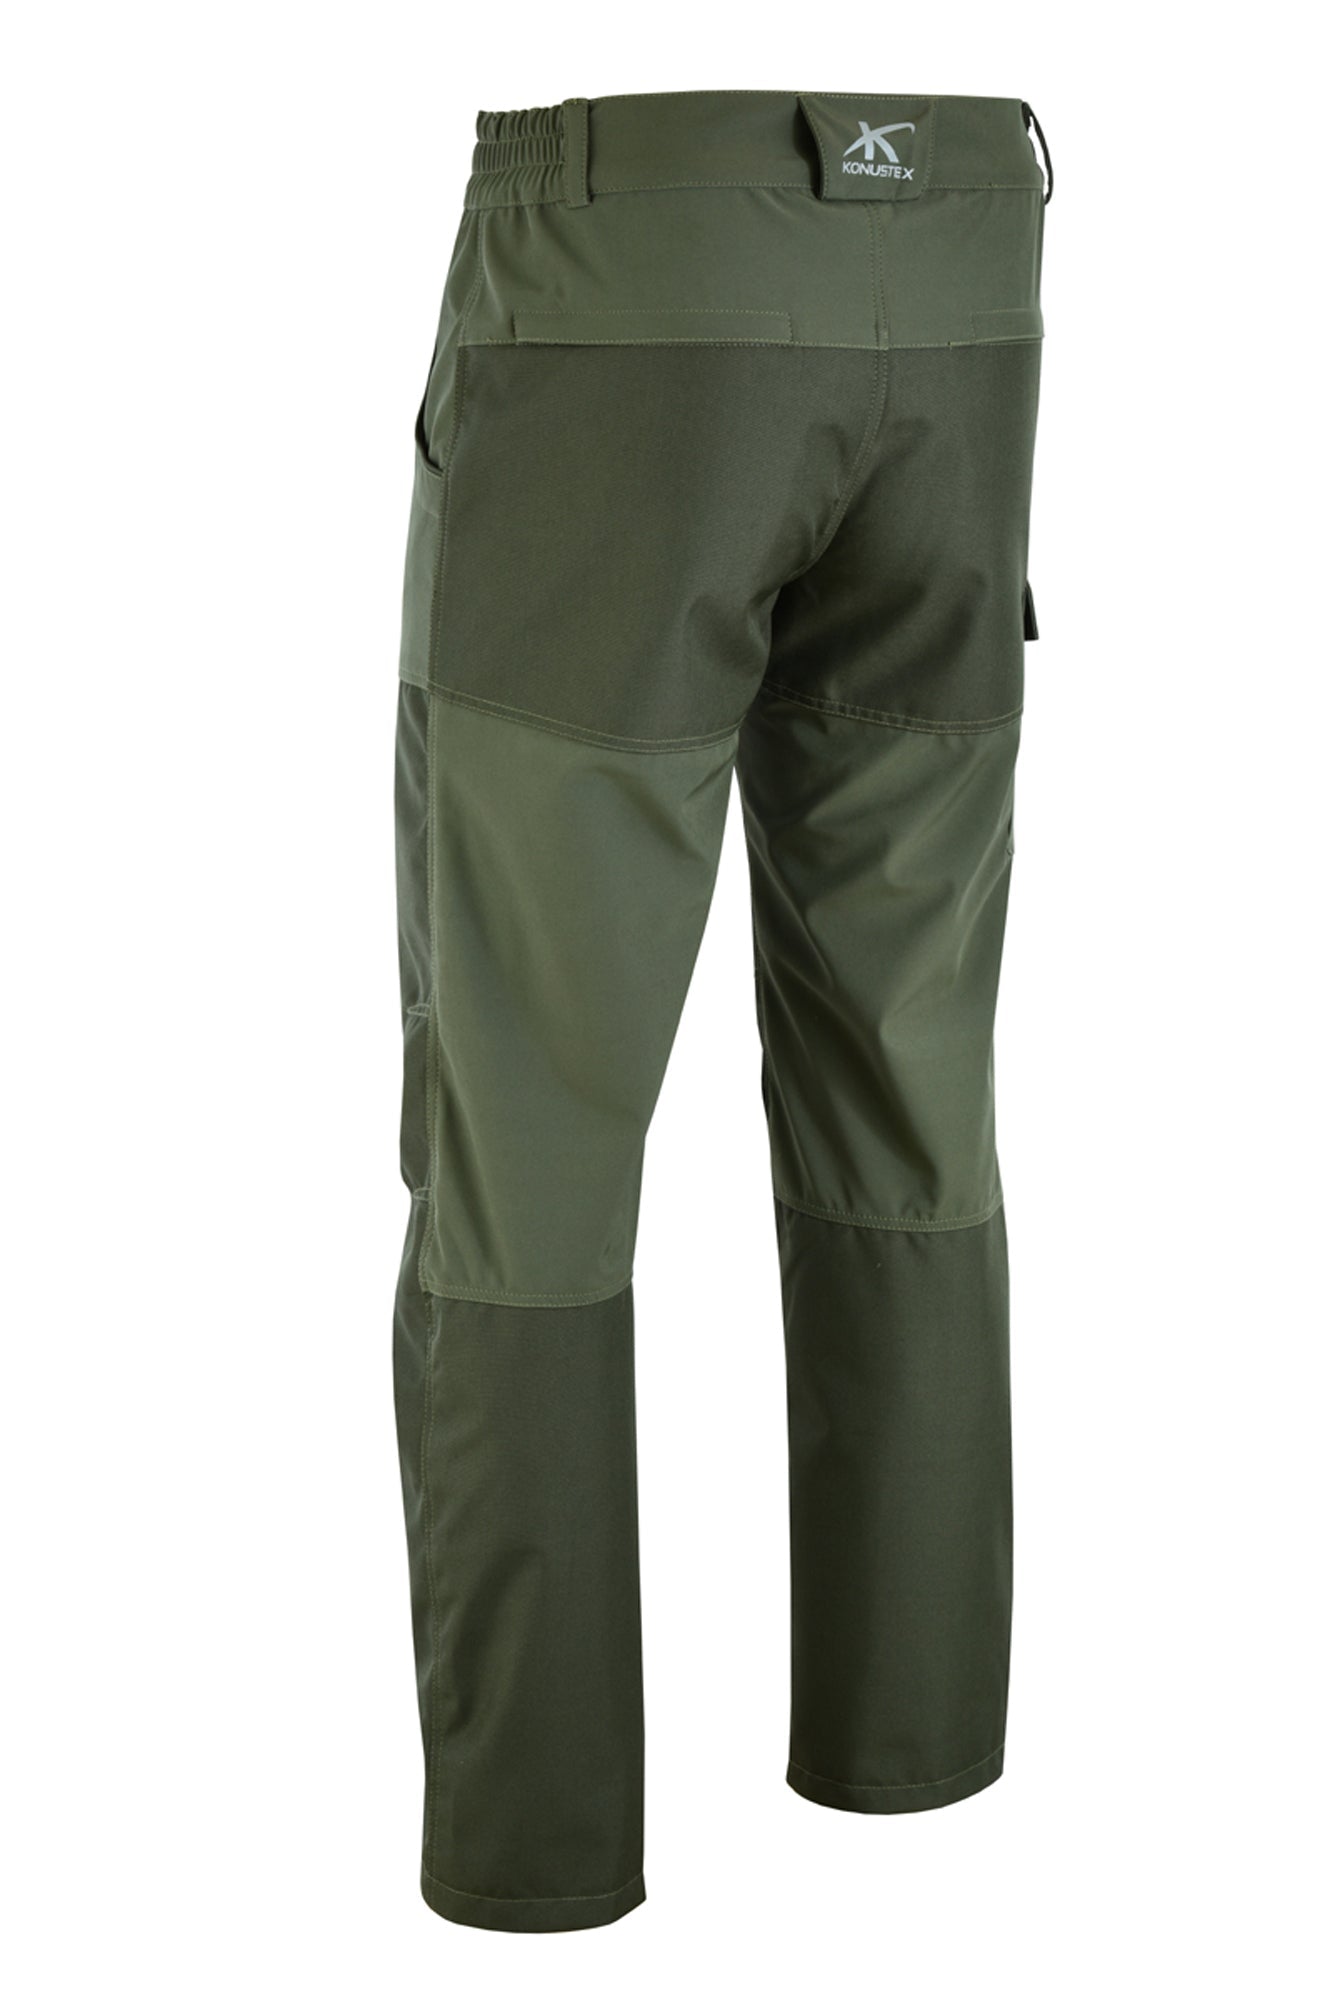 KONUSTEX - Pantalone da caccia KONUSTEX TENACE impermeabile verde - Caccia Outdoor Ciclismo Fitness, Pantaloni - OnTheRoad.shop